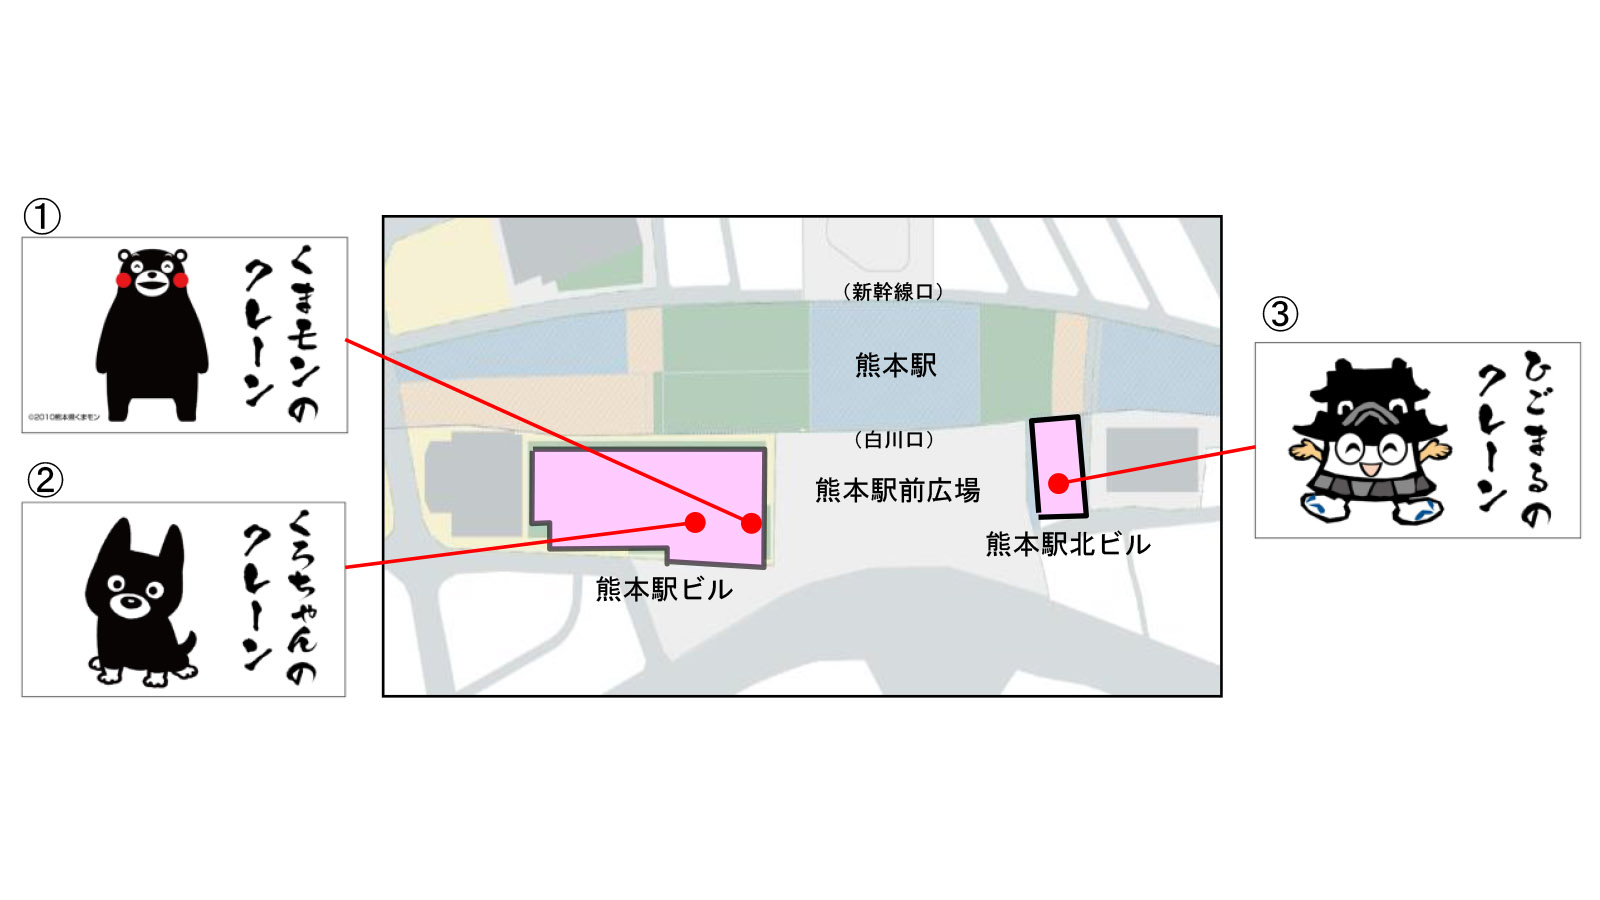 Jr九州 熊本駅ビル工事用クレーンに愛称 くまモン くろちゃん ひごまる の看板設置 トラベル Watch